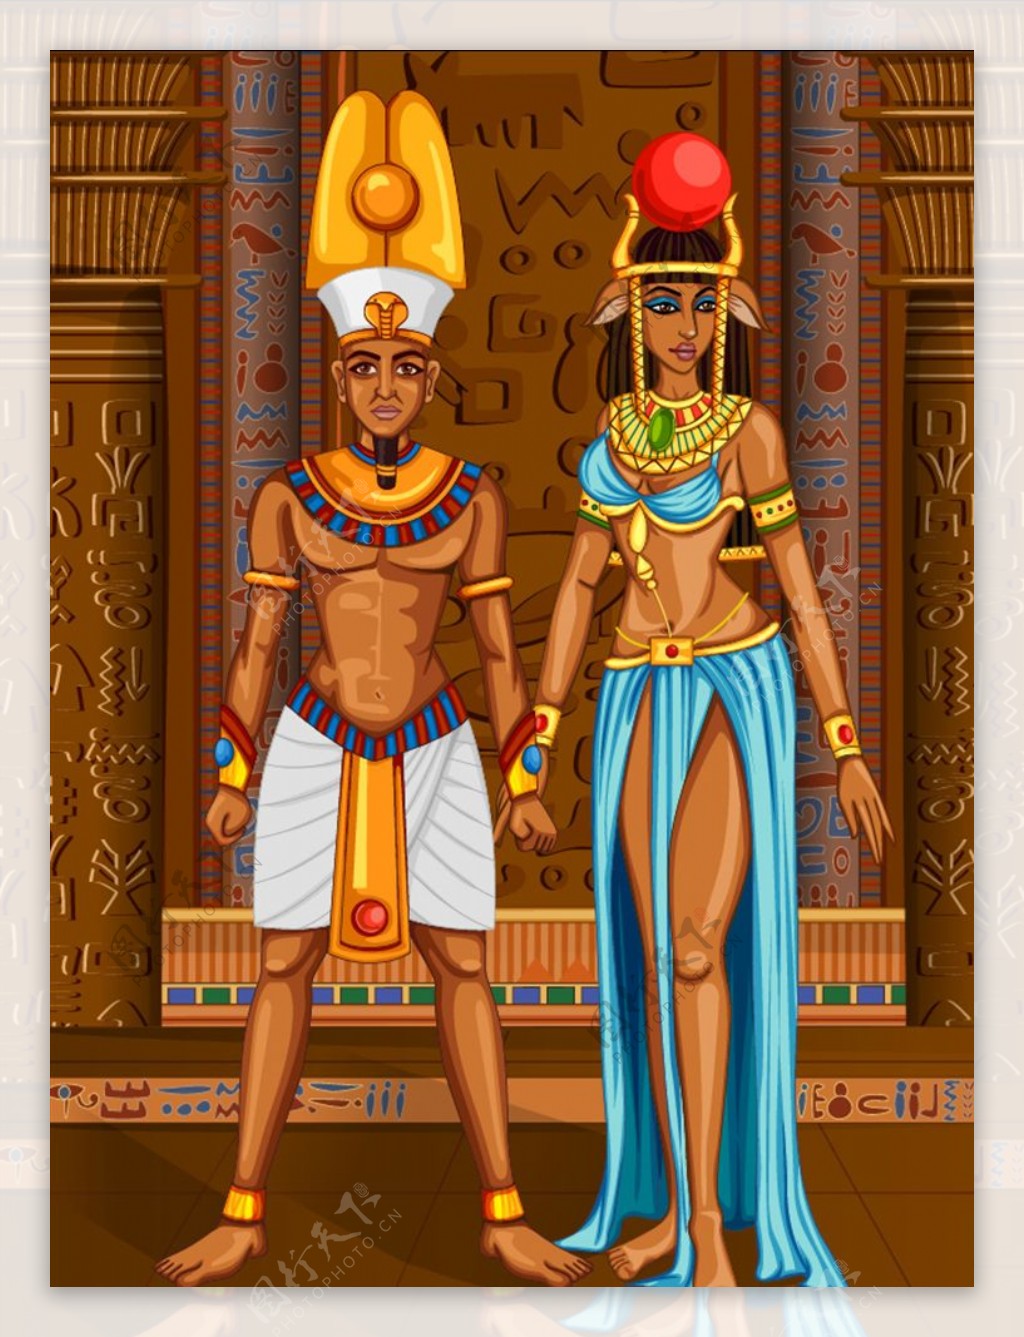 站在宫殿中的埃及男女人物